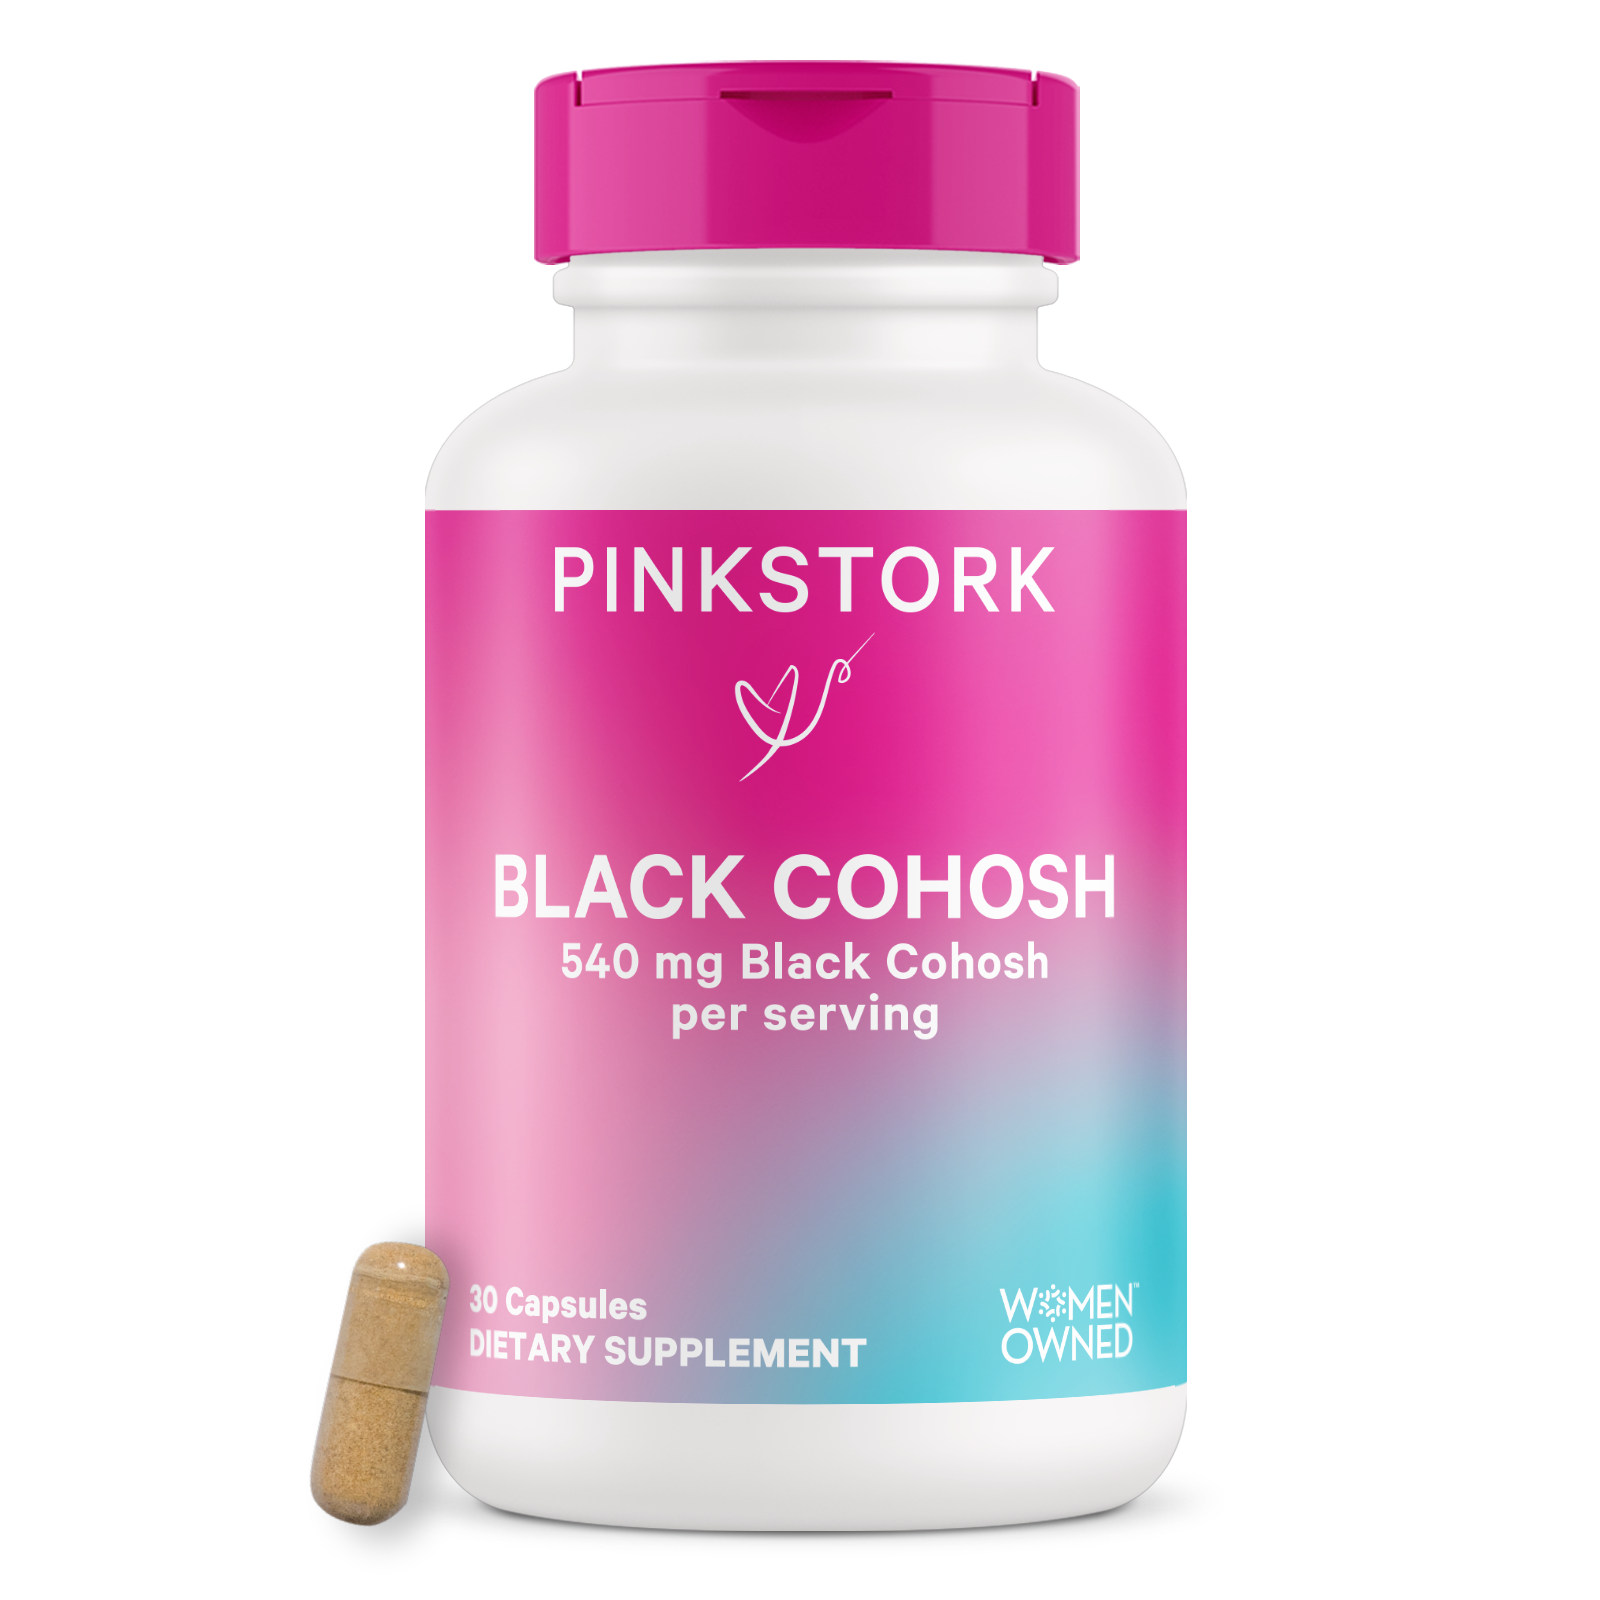 Black Cohosh Capsules